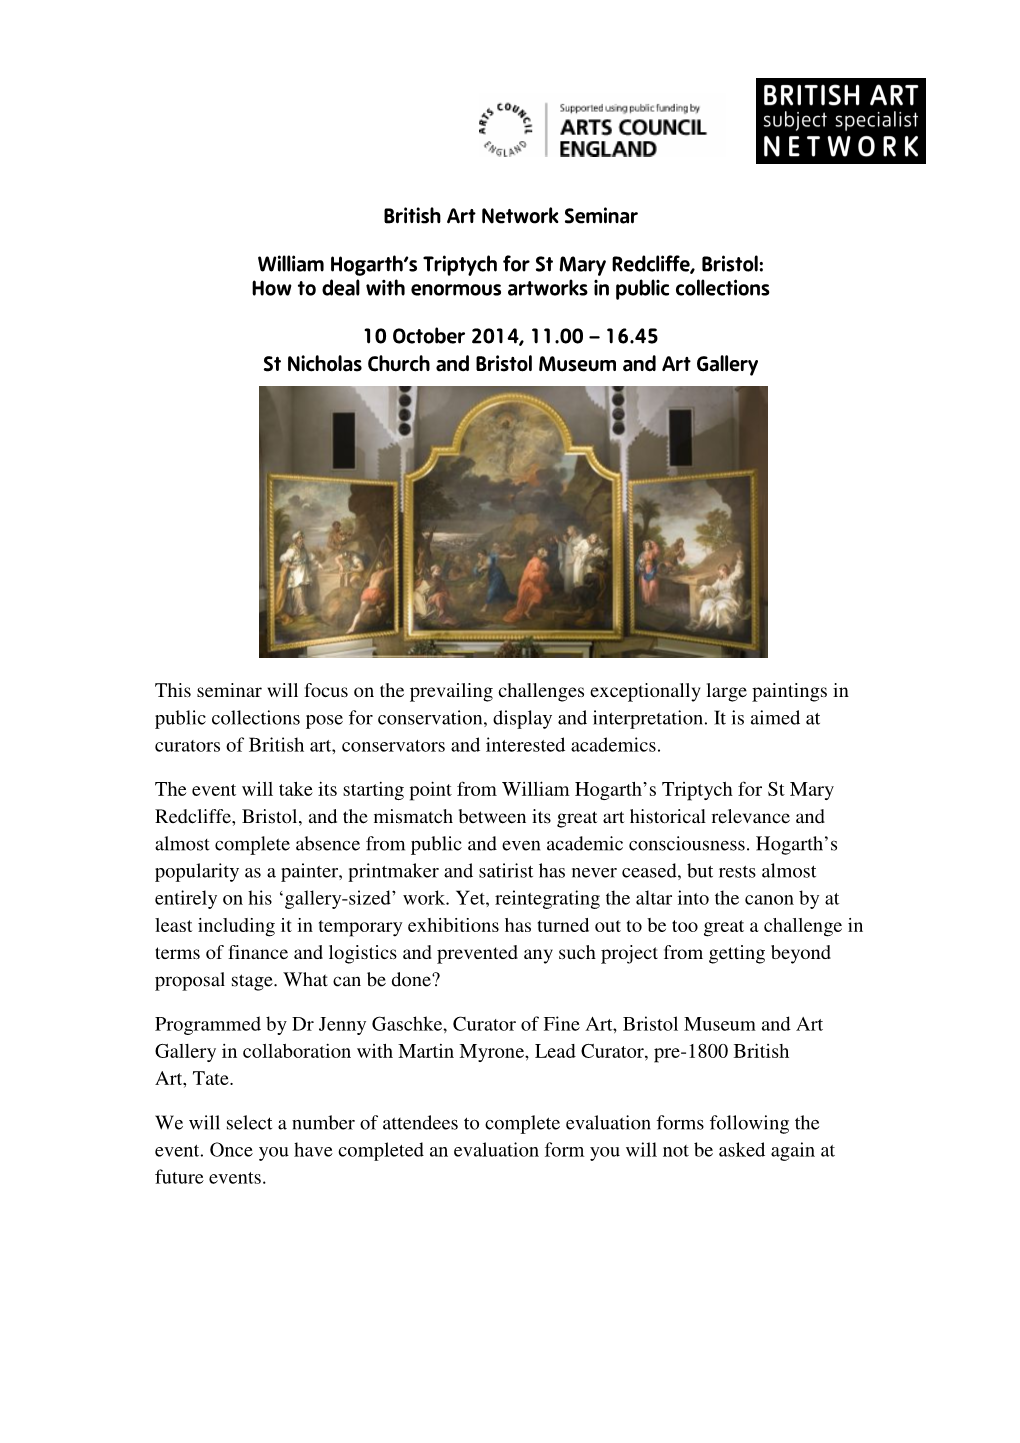 British Art Network Seminar William Hogarth's Triptych for St Mary Redcliffe, Bristol